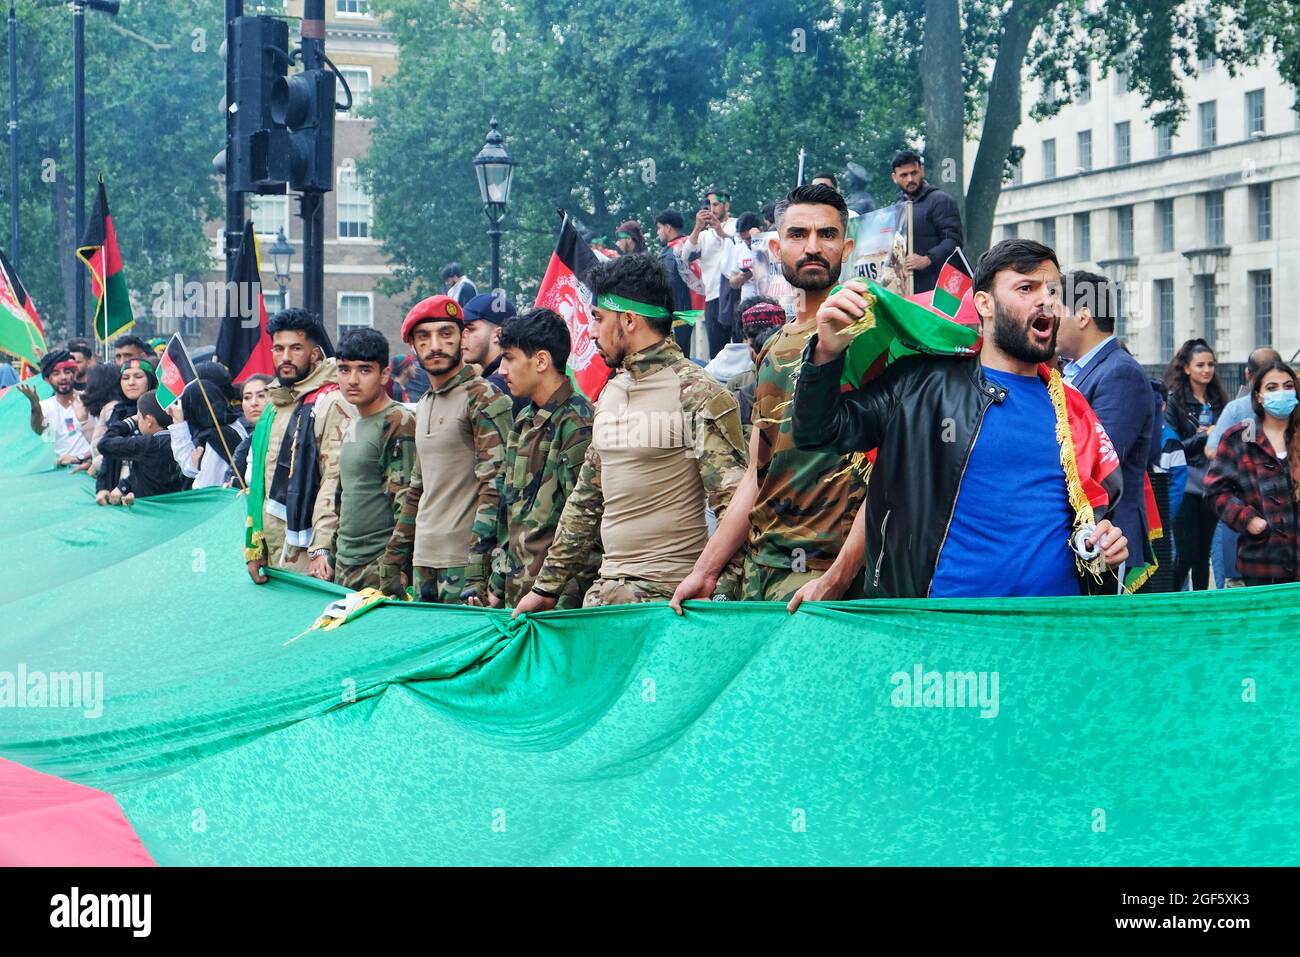 Londra, Regno Unito. I manifestanti marciano nel centro di Londra per dimostrare solidarietà con gli afghani dopo l'acquisizione del paese da parte dei talebani. Foto Stock